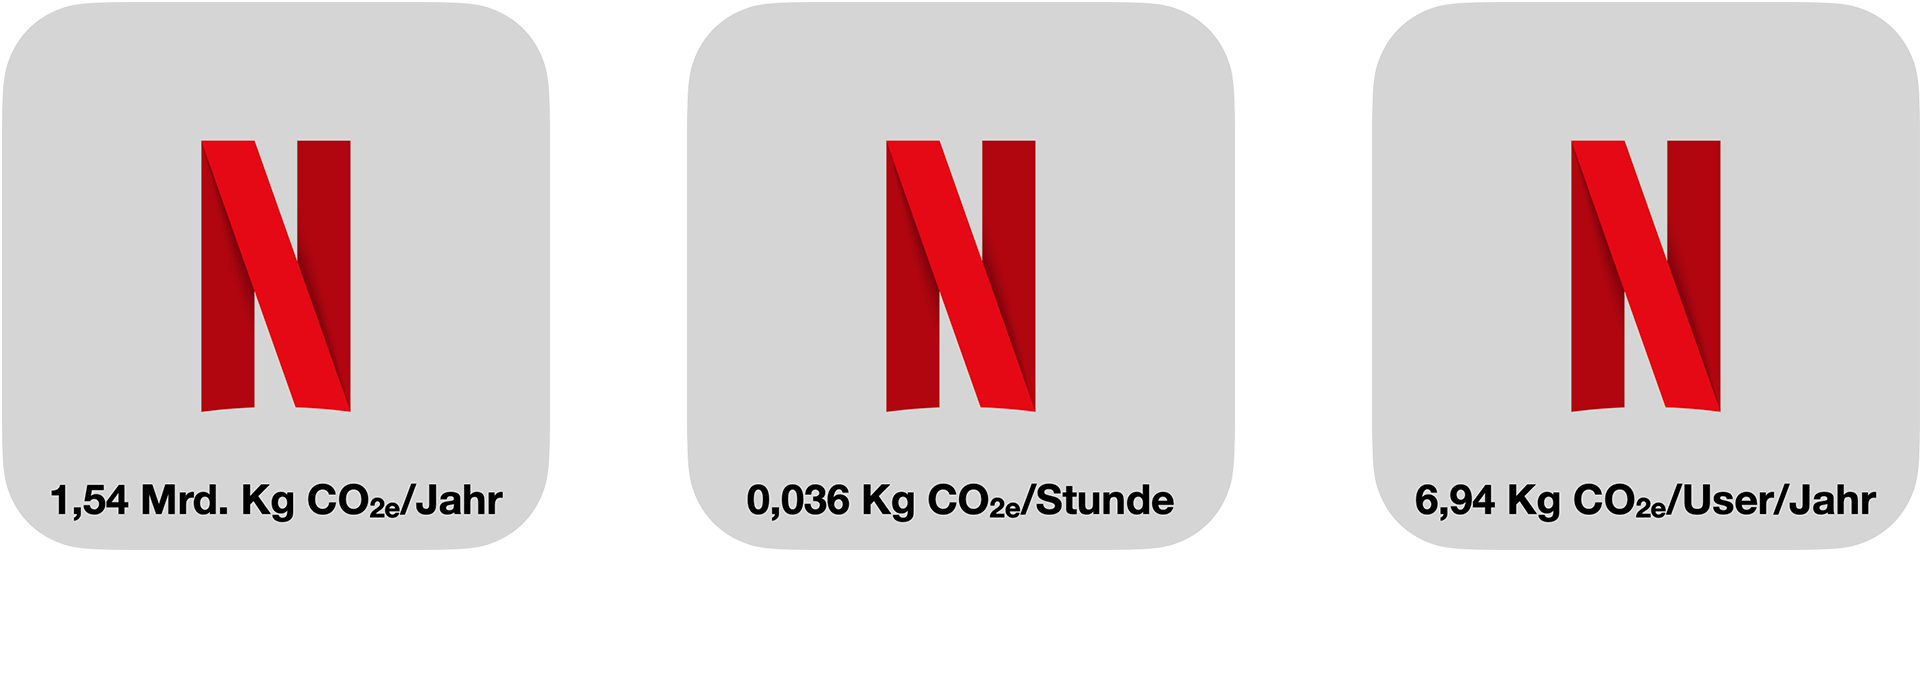 Netflix CO2-Ausstoß im Vergleich